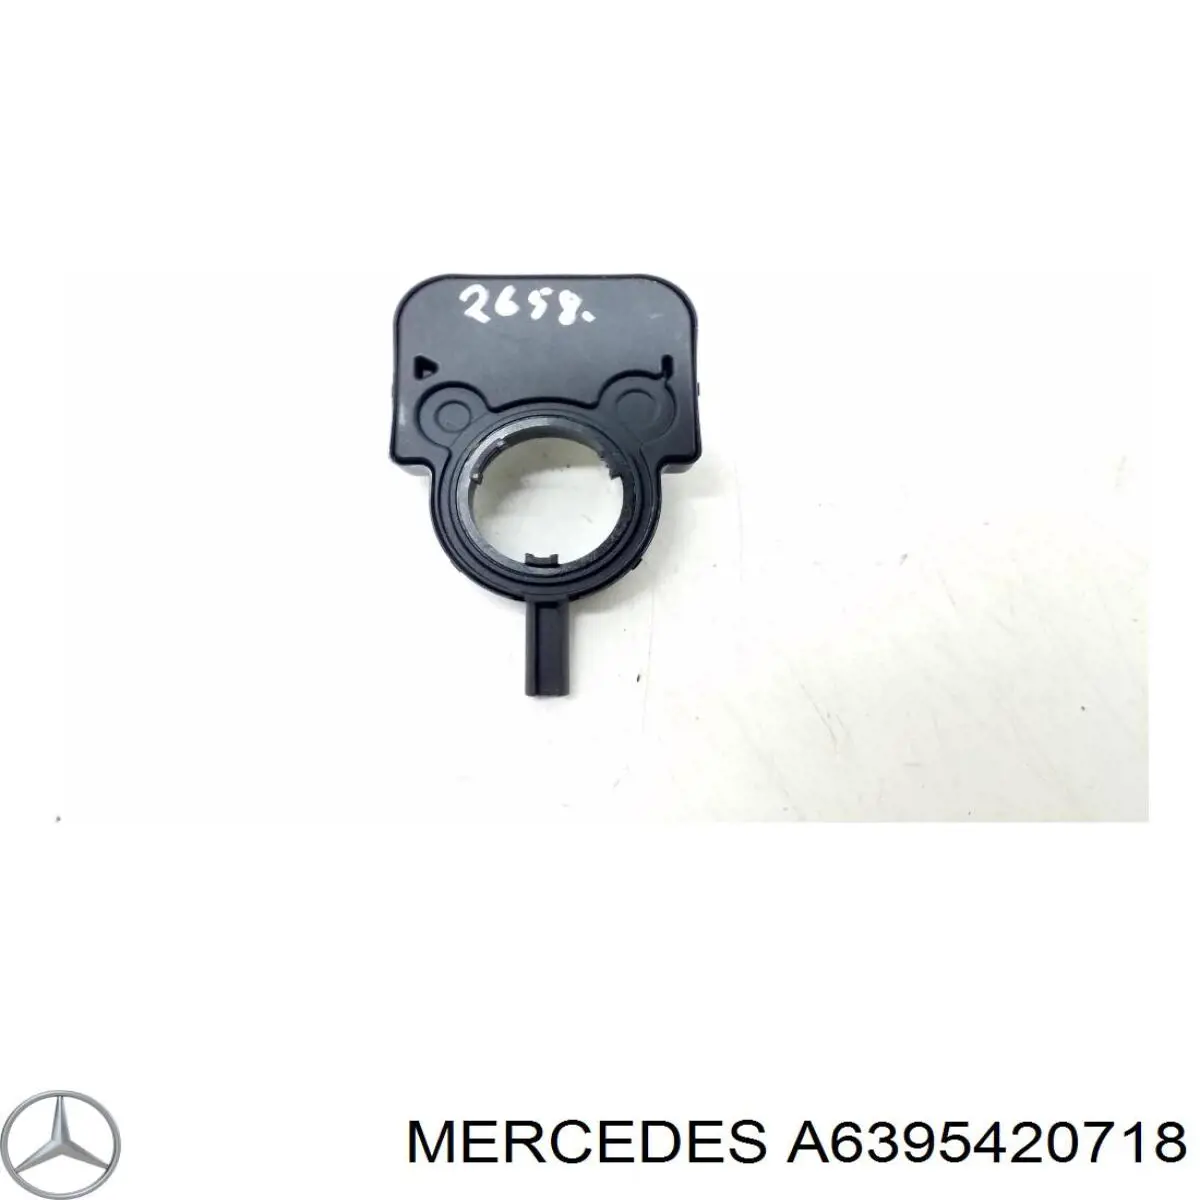 A6395420718 Mercedes sensor do ângulo de viragem do volante de direção